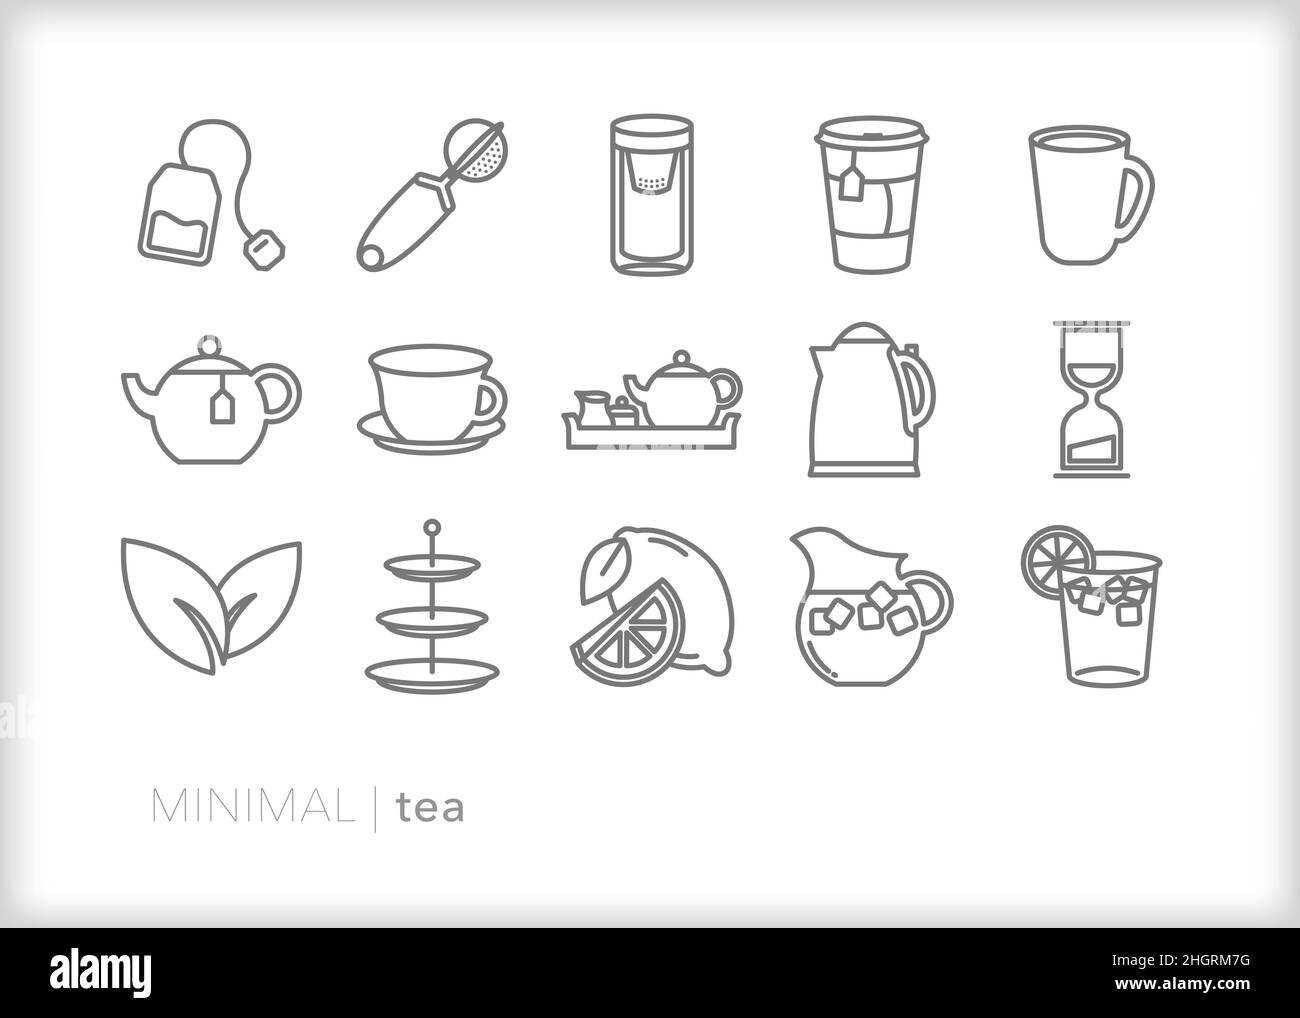 Set mit Teesymbolen zum Brühen eines Teebeckens oder losen Tees für ein heißes Getränk oder zum Servieren von Eistee Stock Vektor